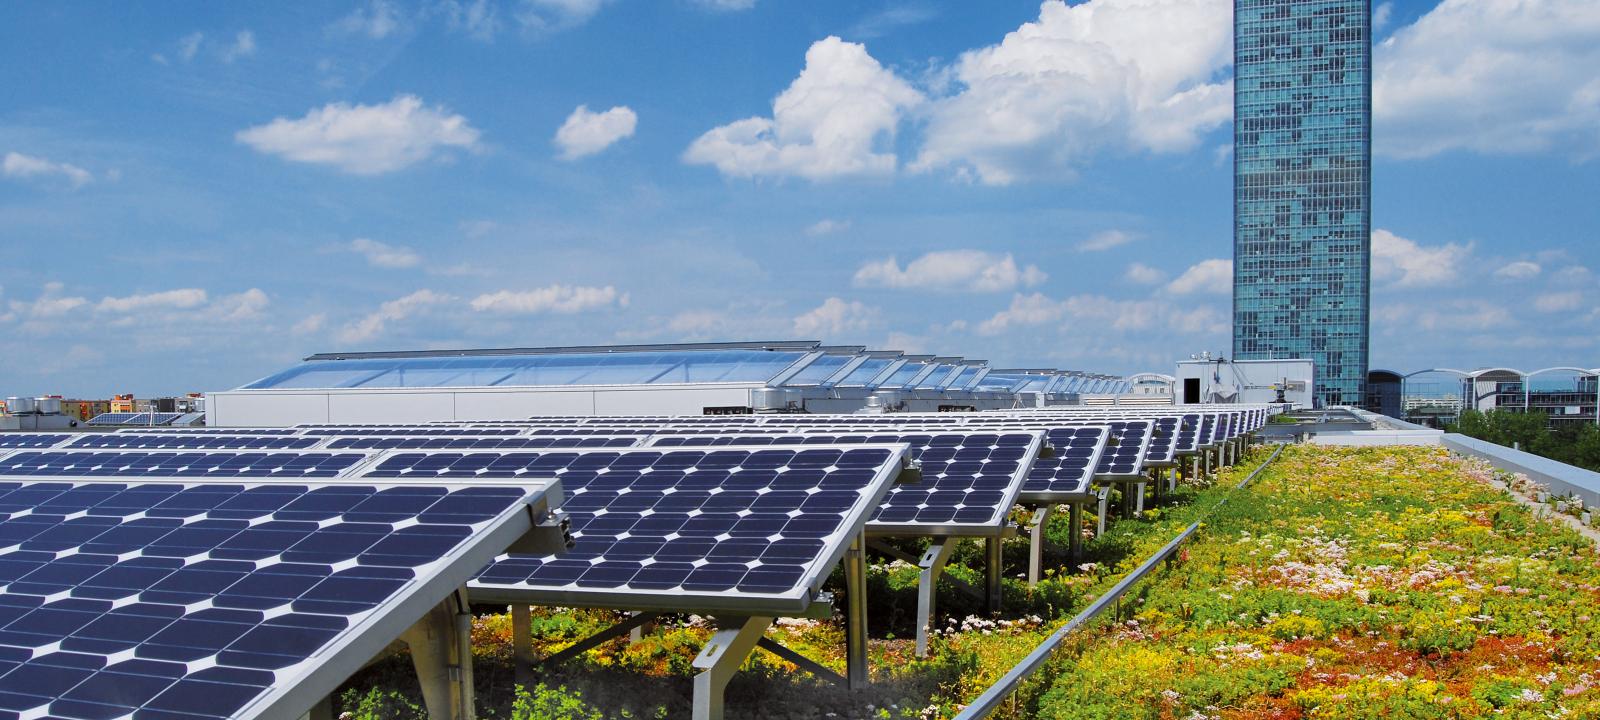 La combinazione di pannelli solari e tetto verde estensivo